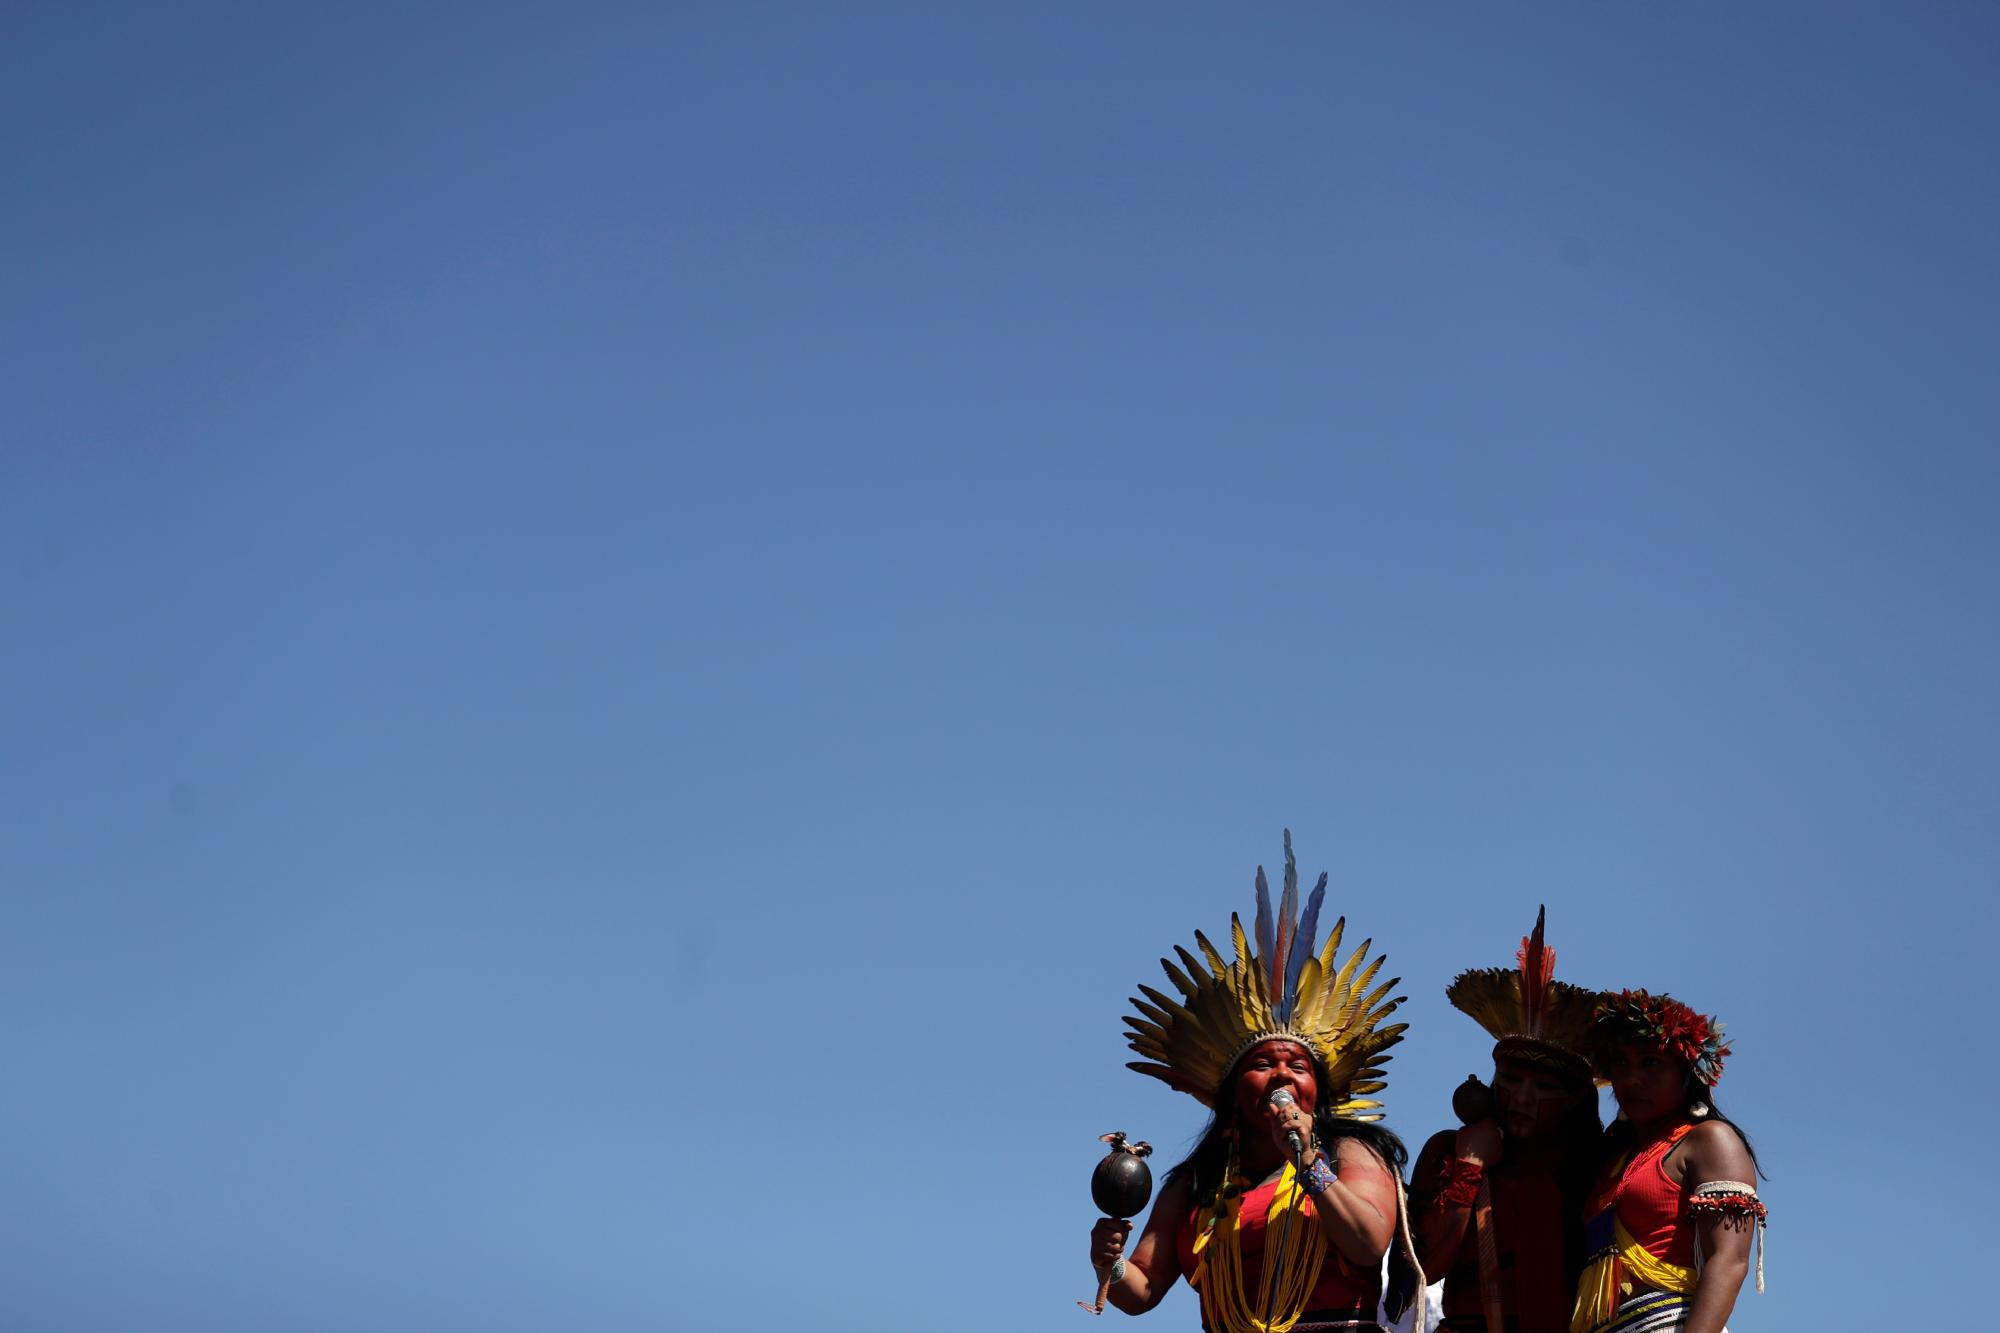 La líder indígena Sonia Guajajara, izquierda, habla durante una Marcha de Mujeres Indígenas, en Brasilia, Brasil, el martes 13 de agosto de 2019. Cientos de mujeres indígenas llegaron a la capital de Brasil para protestar por las políticas del presidente Jair Bolsonaro. 